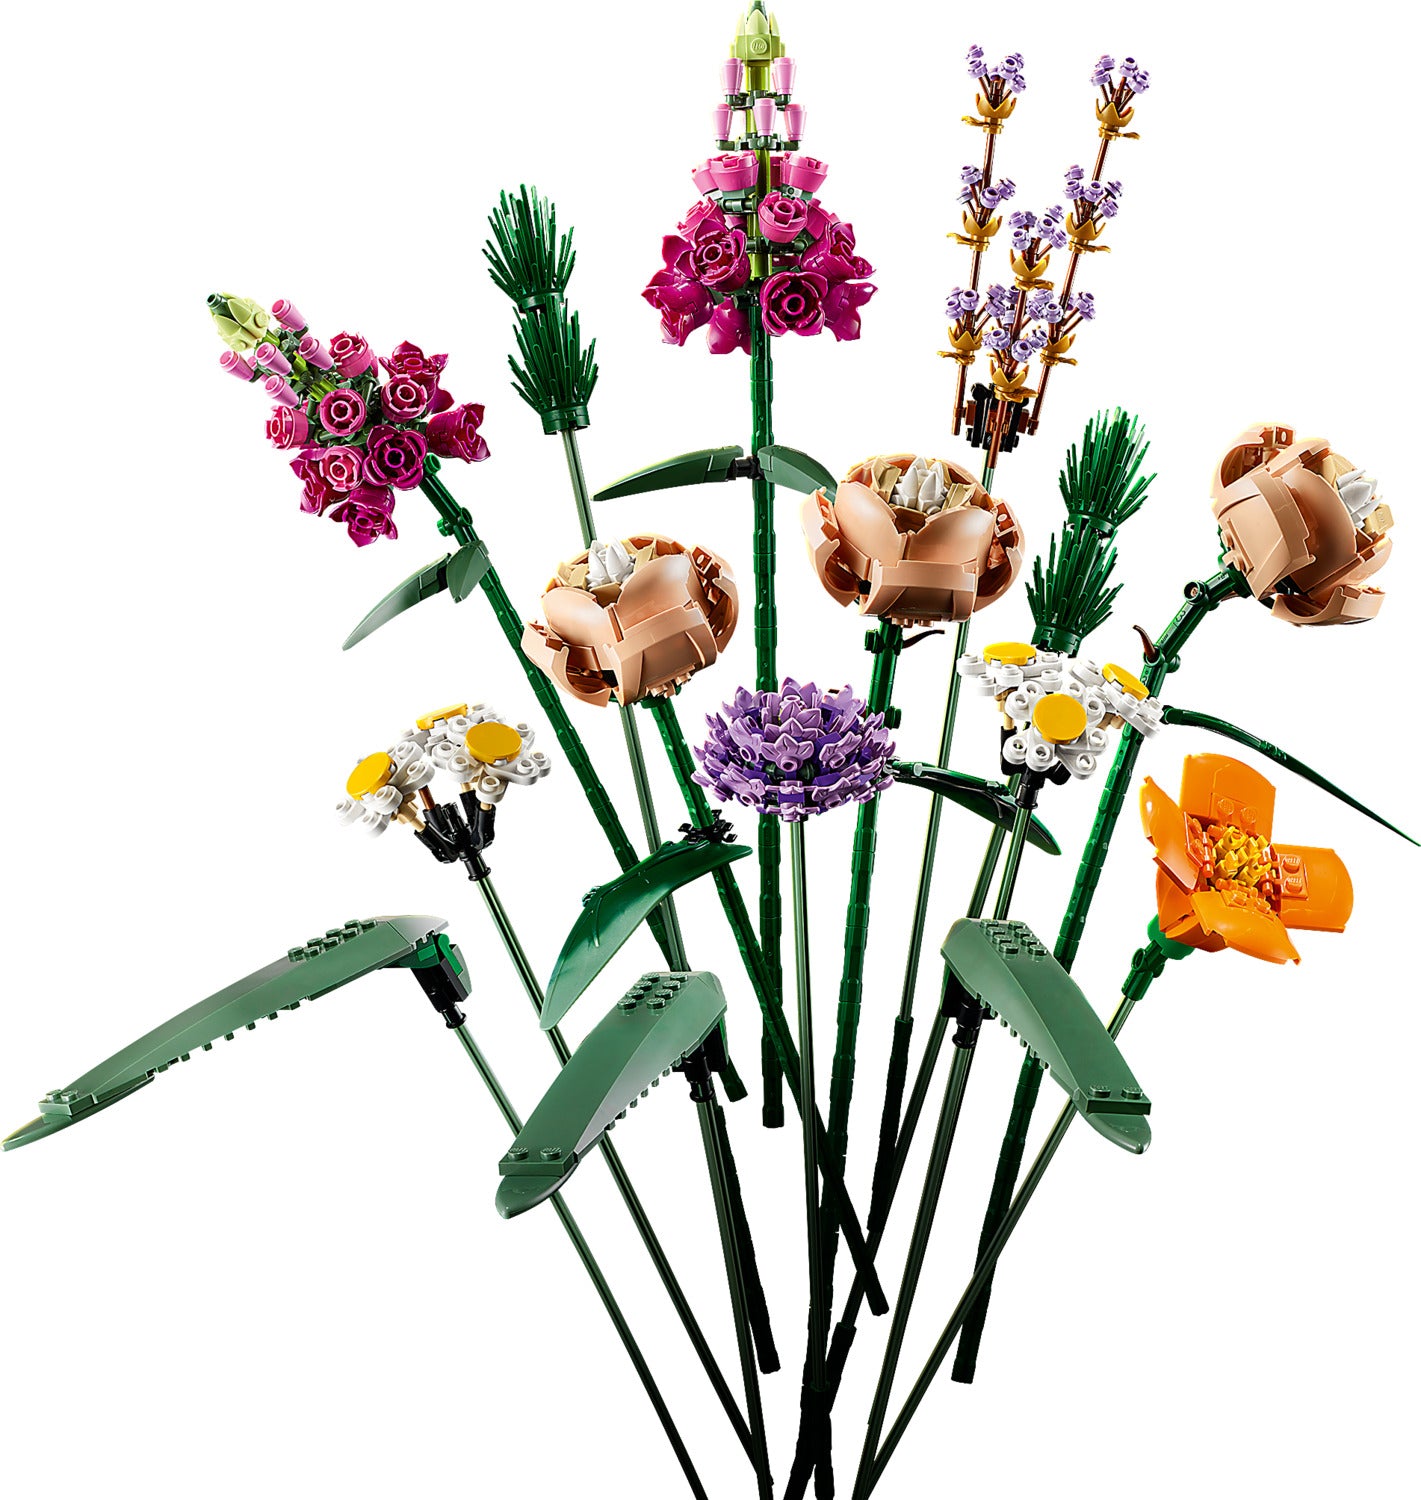 LEGO® Creator Expert: Flower Bouquet